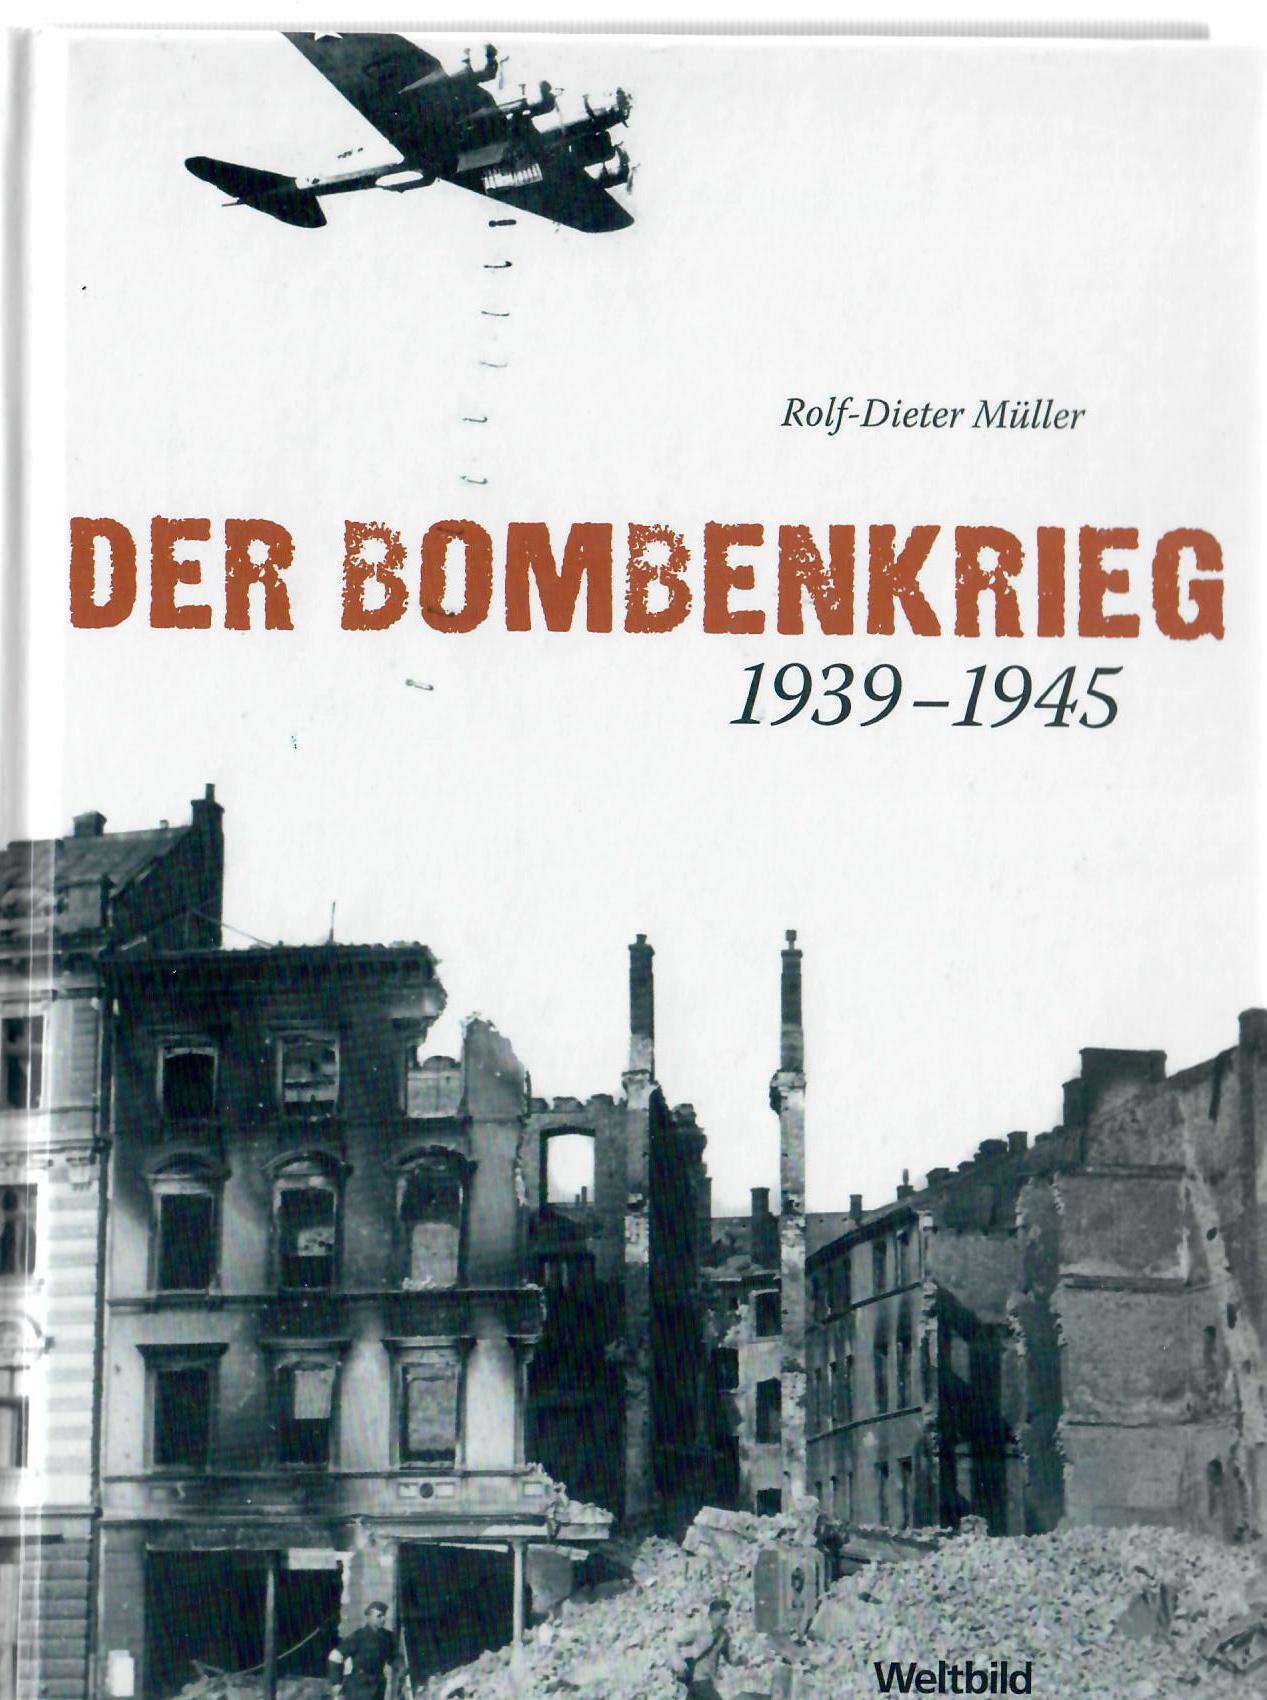 Mller, Rolf-Dieter   : Der Bombenkrieg 1939 - 1945